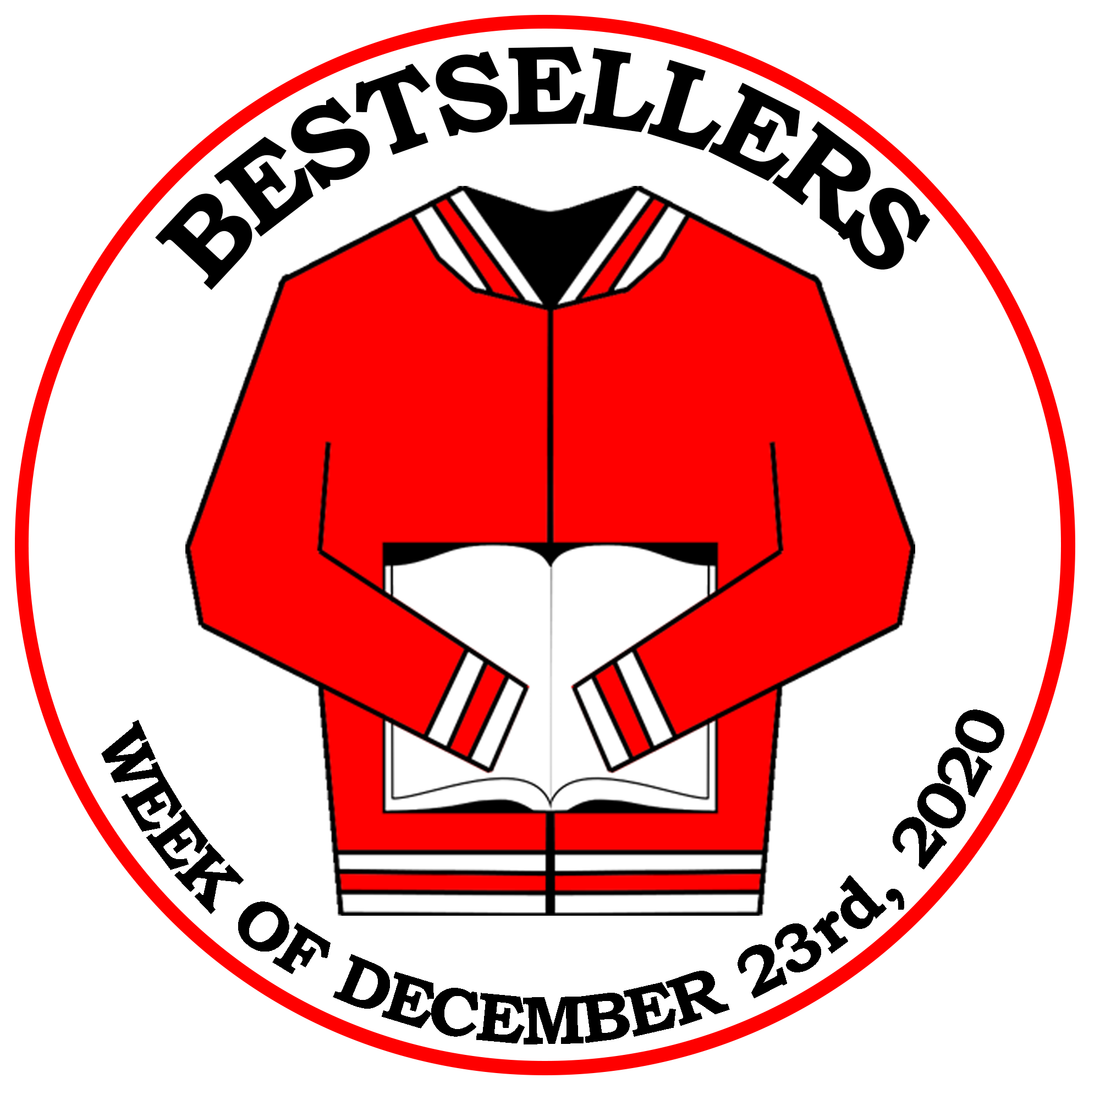 Bestsellers (Week of 12/23/20)